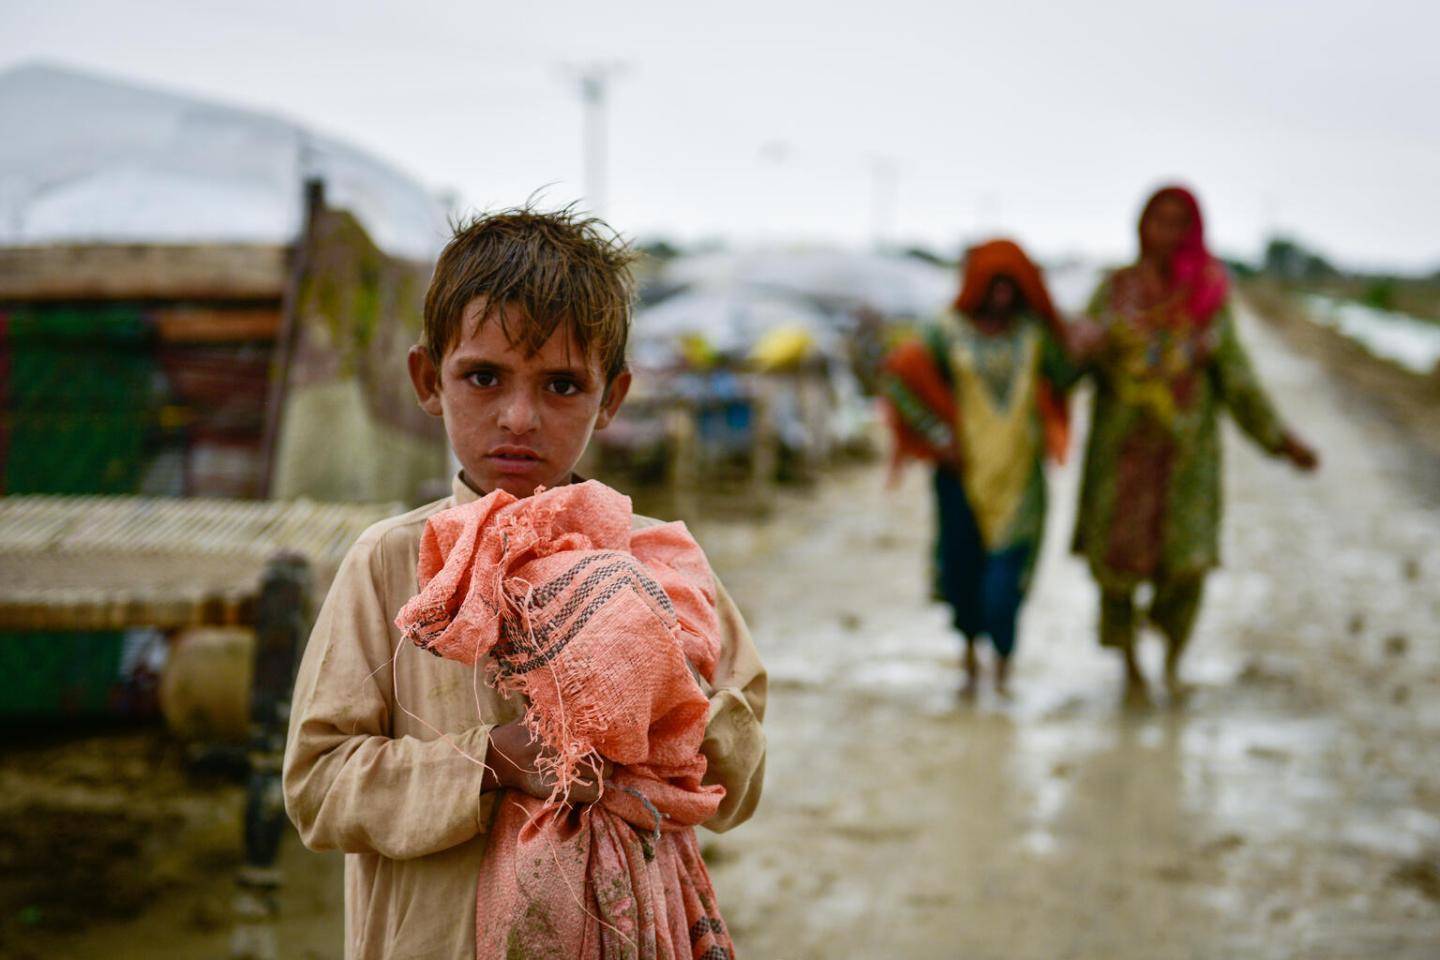 Ljósmynd: UNICEF/Sami Malik - mynd